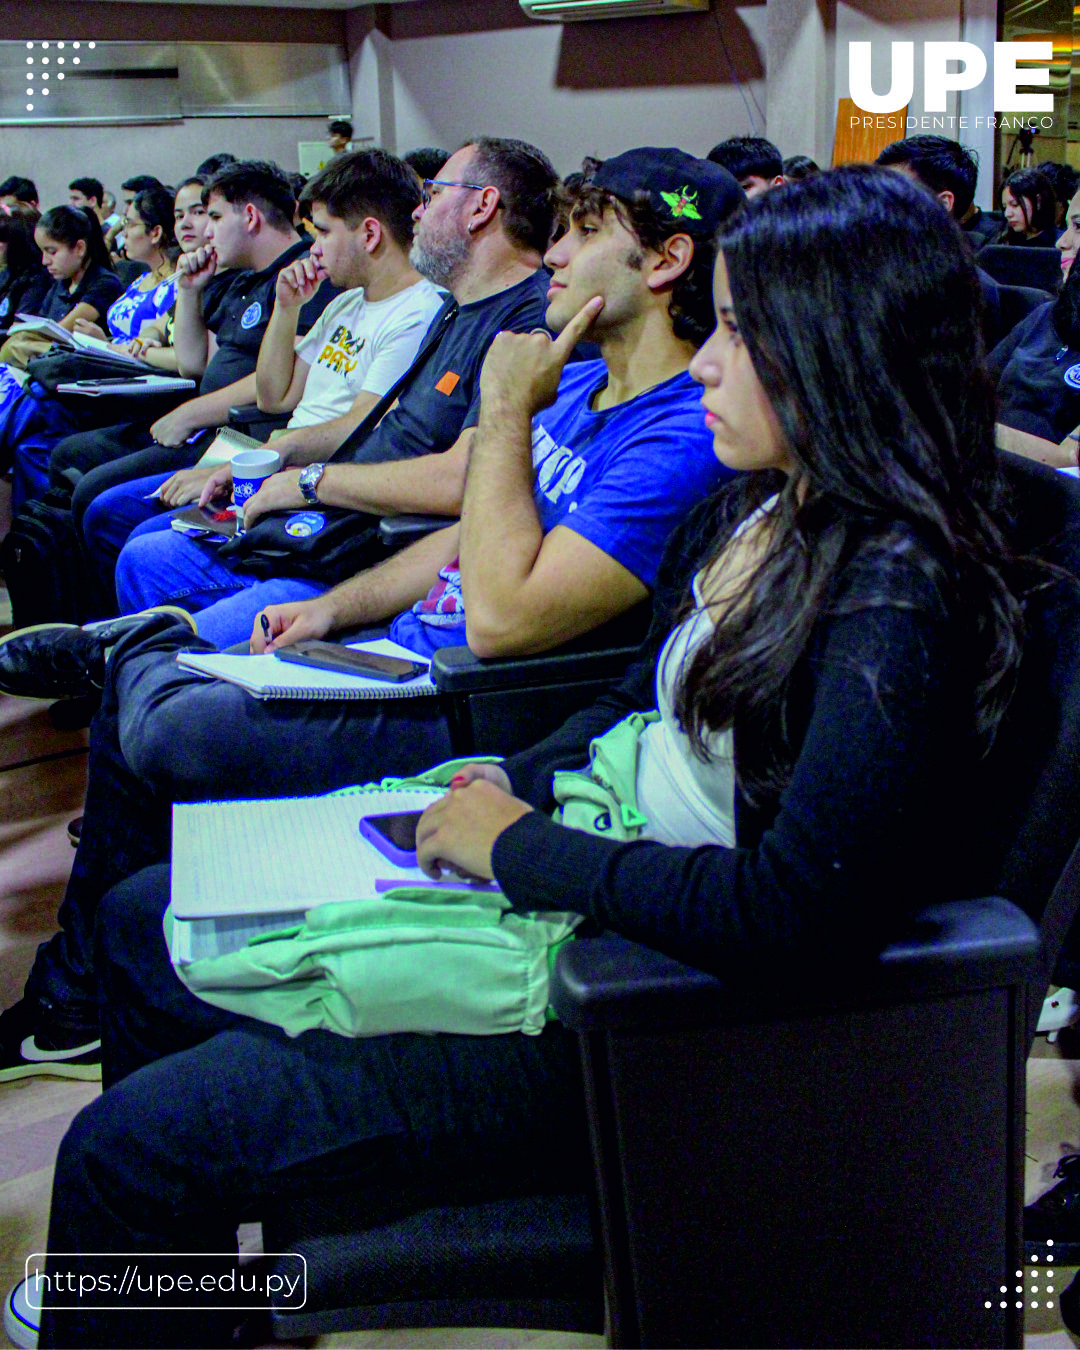 UPE Anfitriona el Festival Latinoamericano de Instalación de Software Libre 